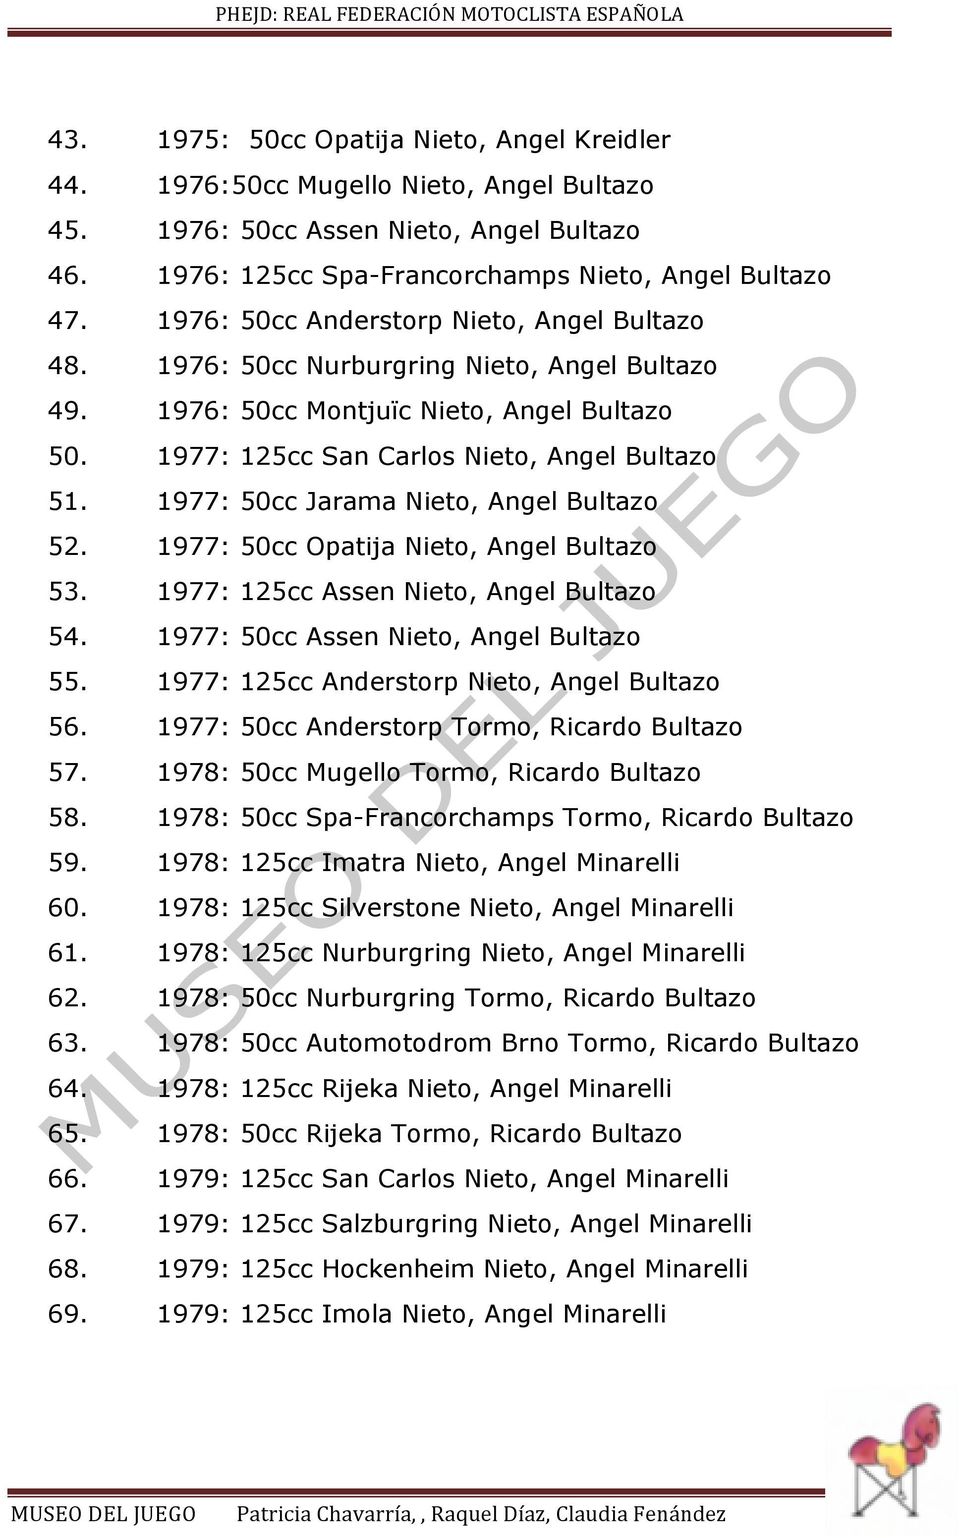 1977: 50cc Jarama Nieto, Angel Bultazo 52. 1977: 50cc Opatija Nieto, Angel Bultazo 53. 1977: 125cc Assen Nieto, Angel Bultazo 54. 1977: 50cc Assen Nieto, Angel Bultazo 55.